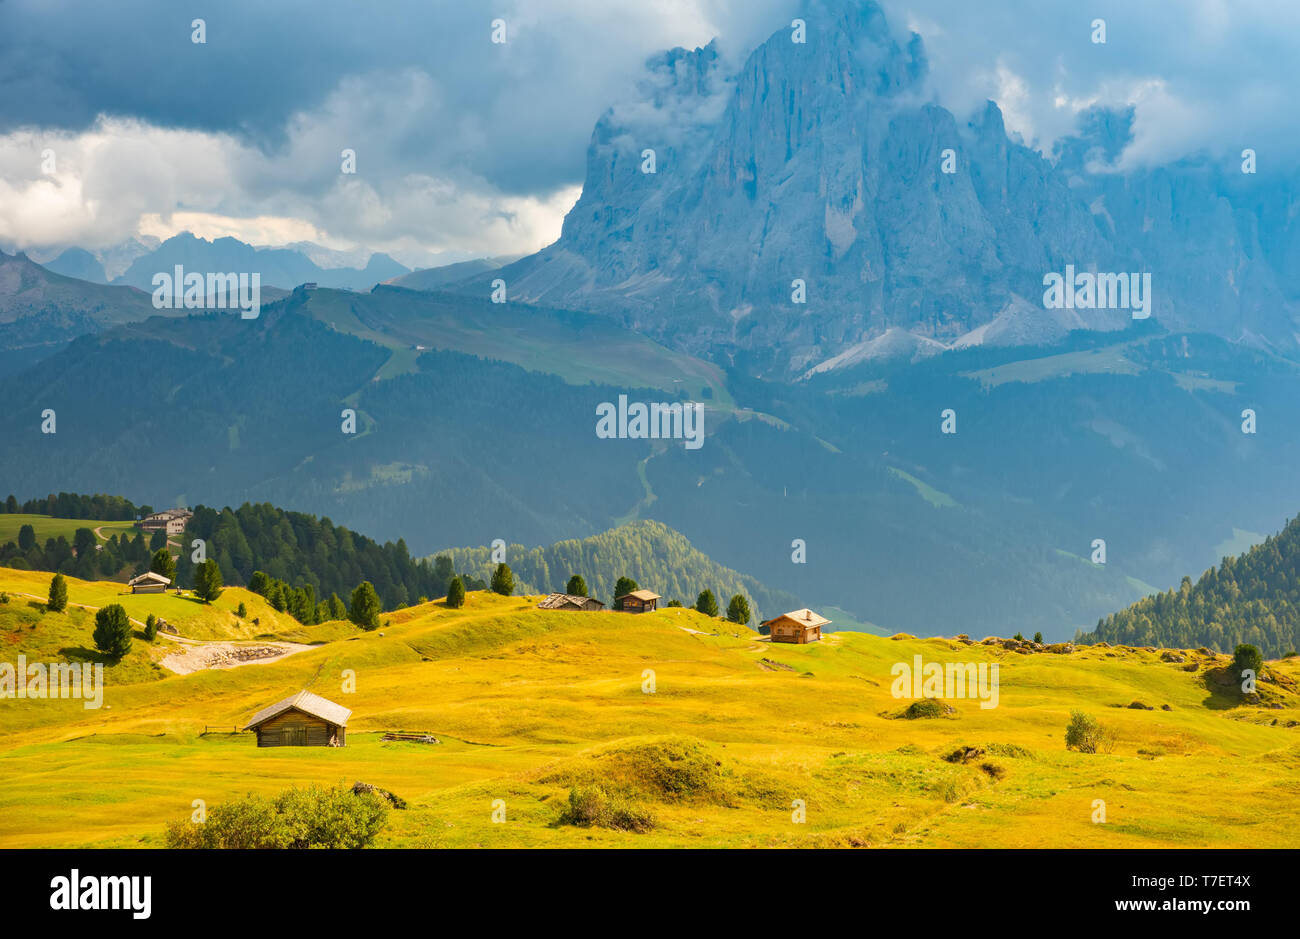 Straßen und Häuser, grüne Felder, Dolomiten, geislergruppe Puezgruppe, Italien Stockfoto